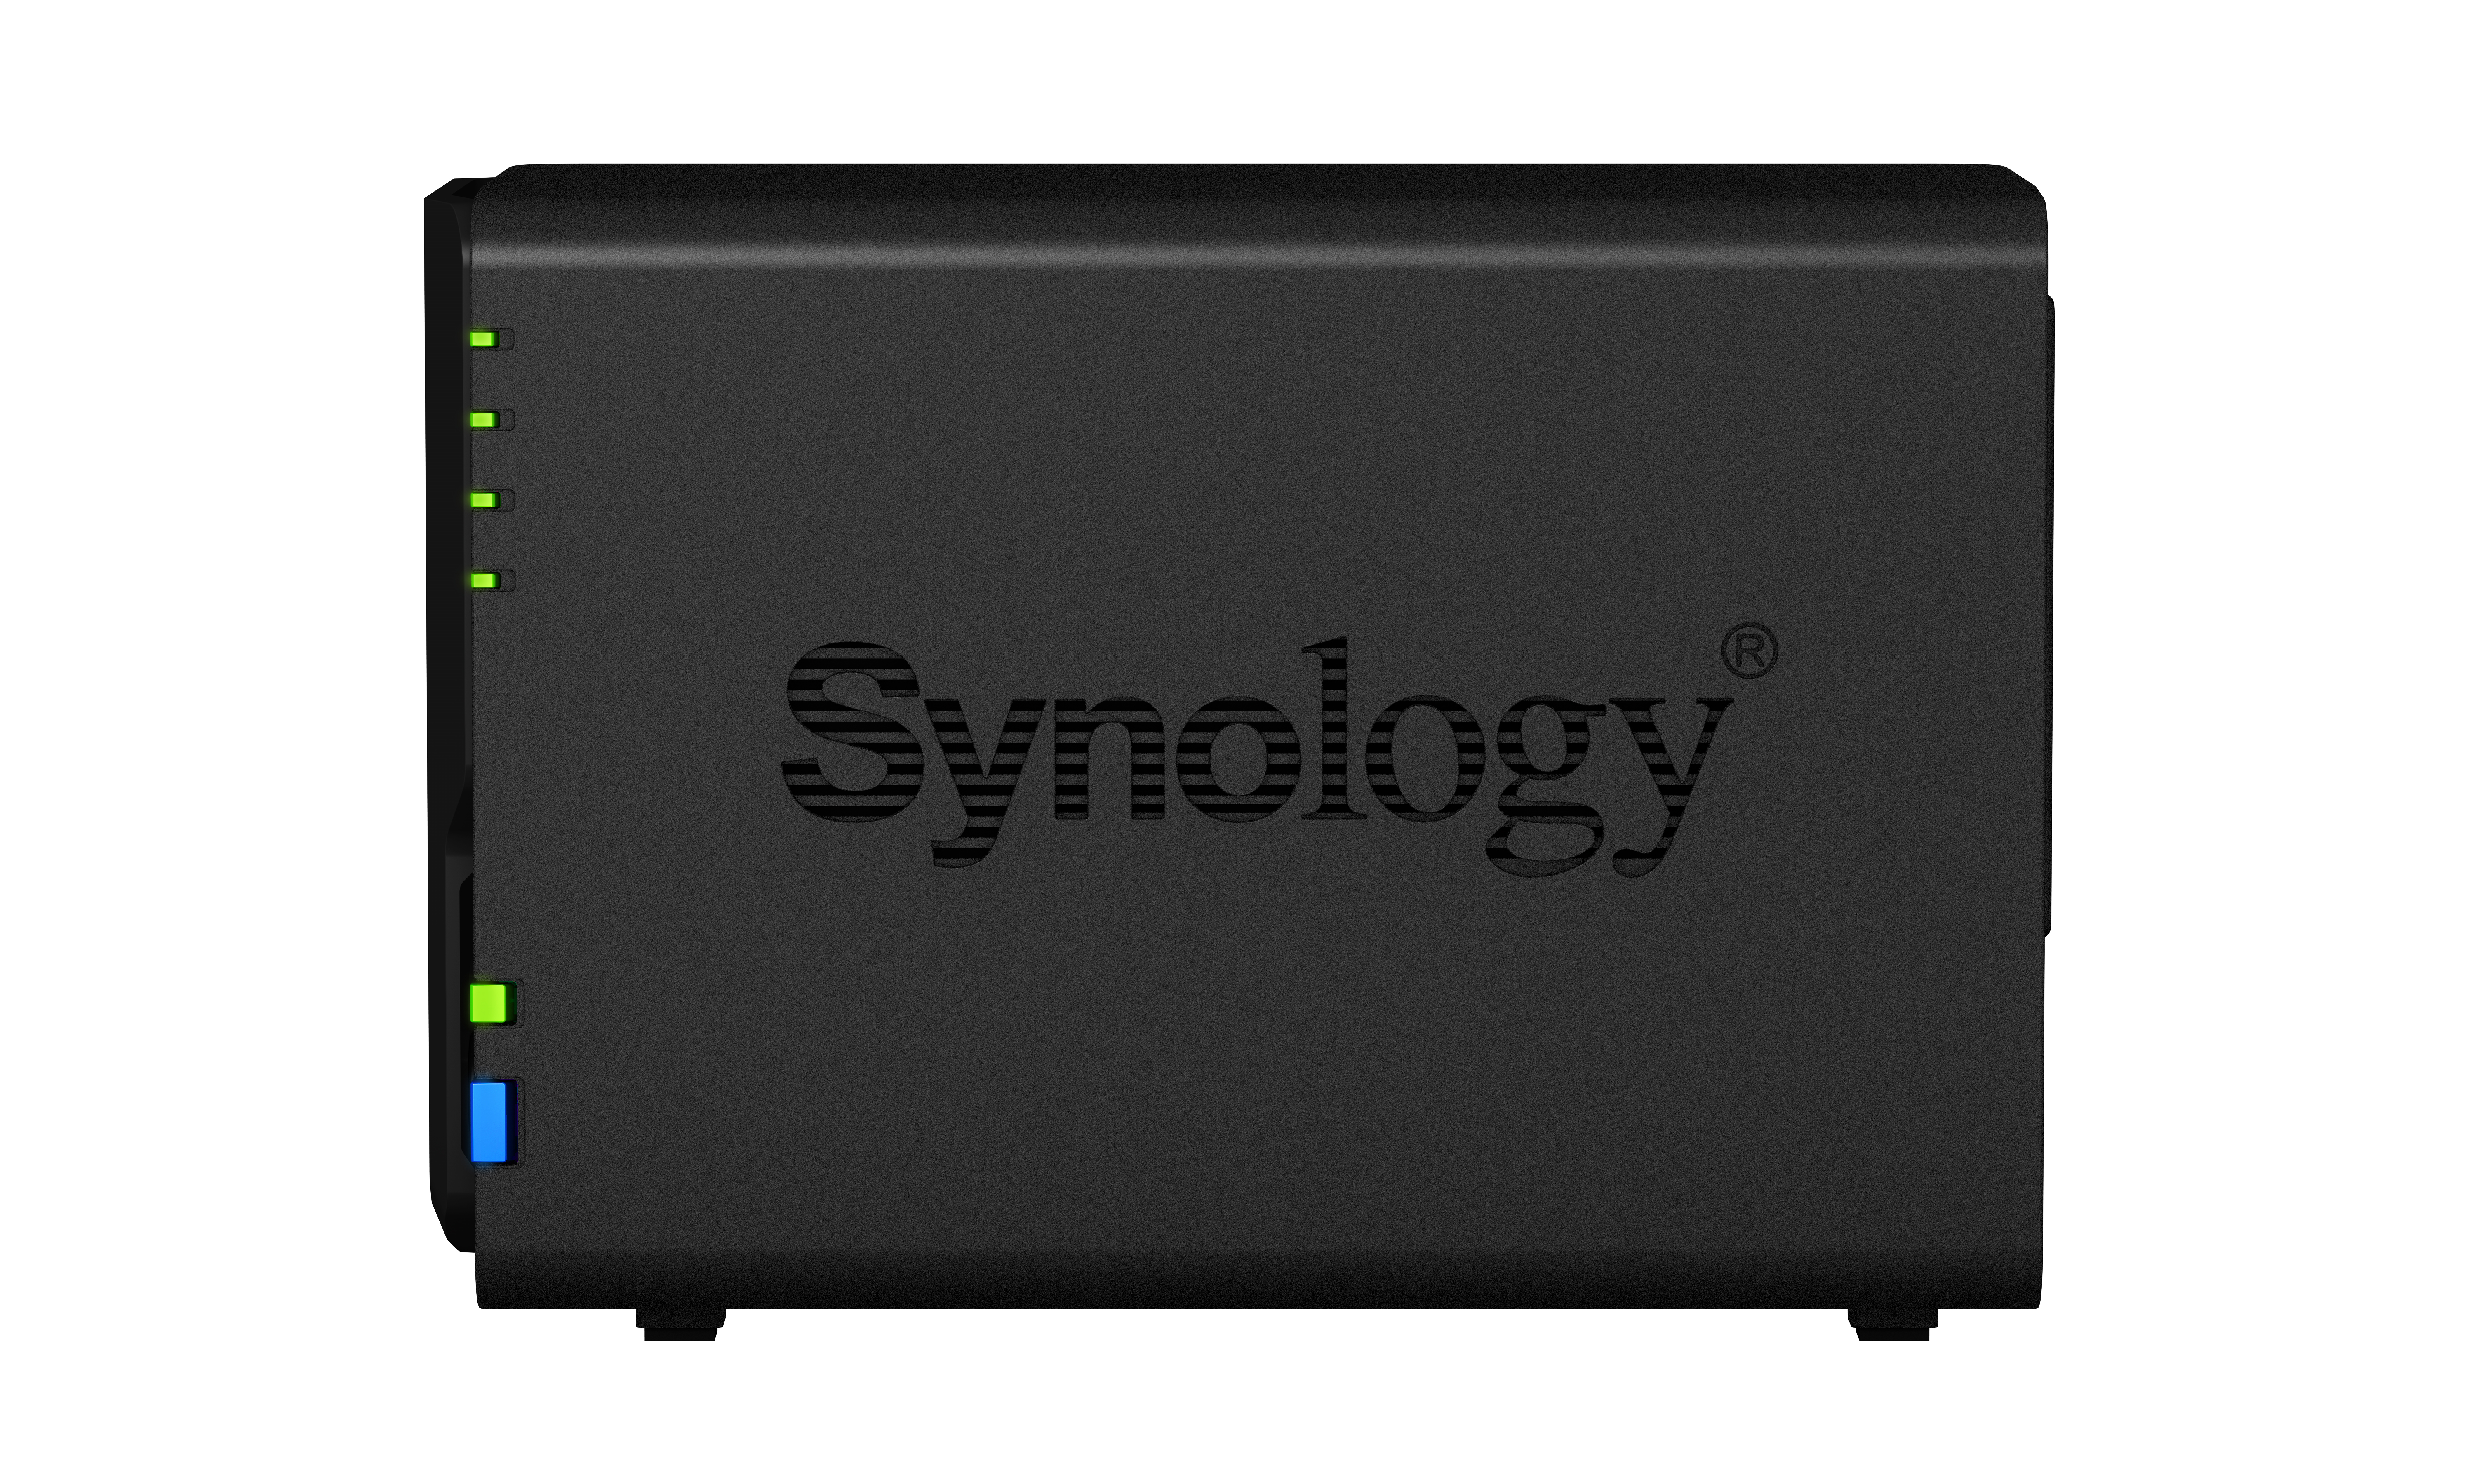 Synology® wprowadza dwukieszeniową stację DiskStation DS223, która umożliwia proste i efektywne zarządzanie plikami